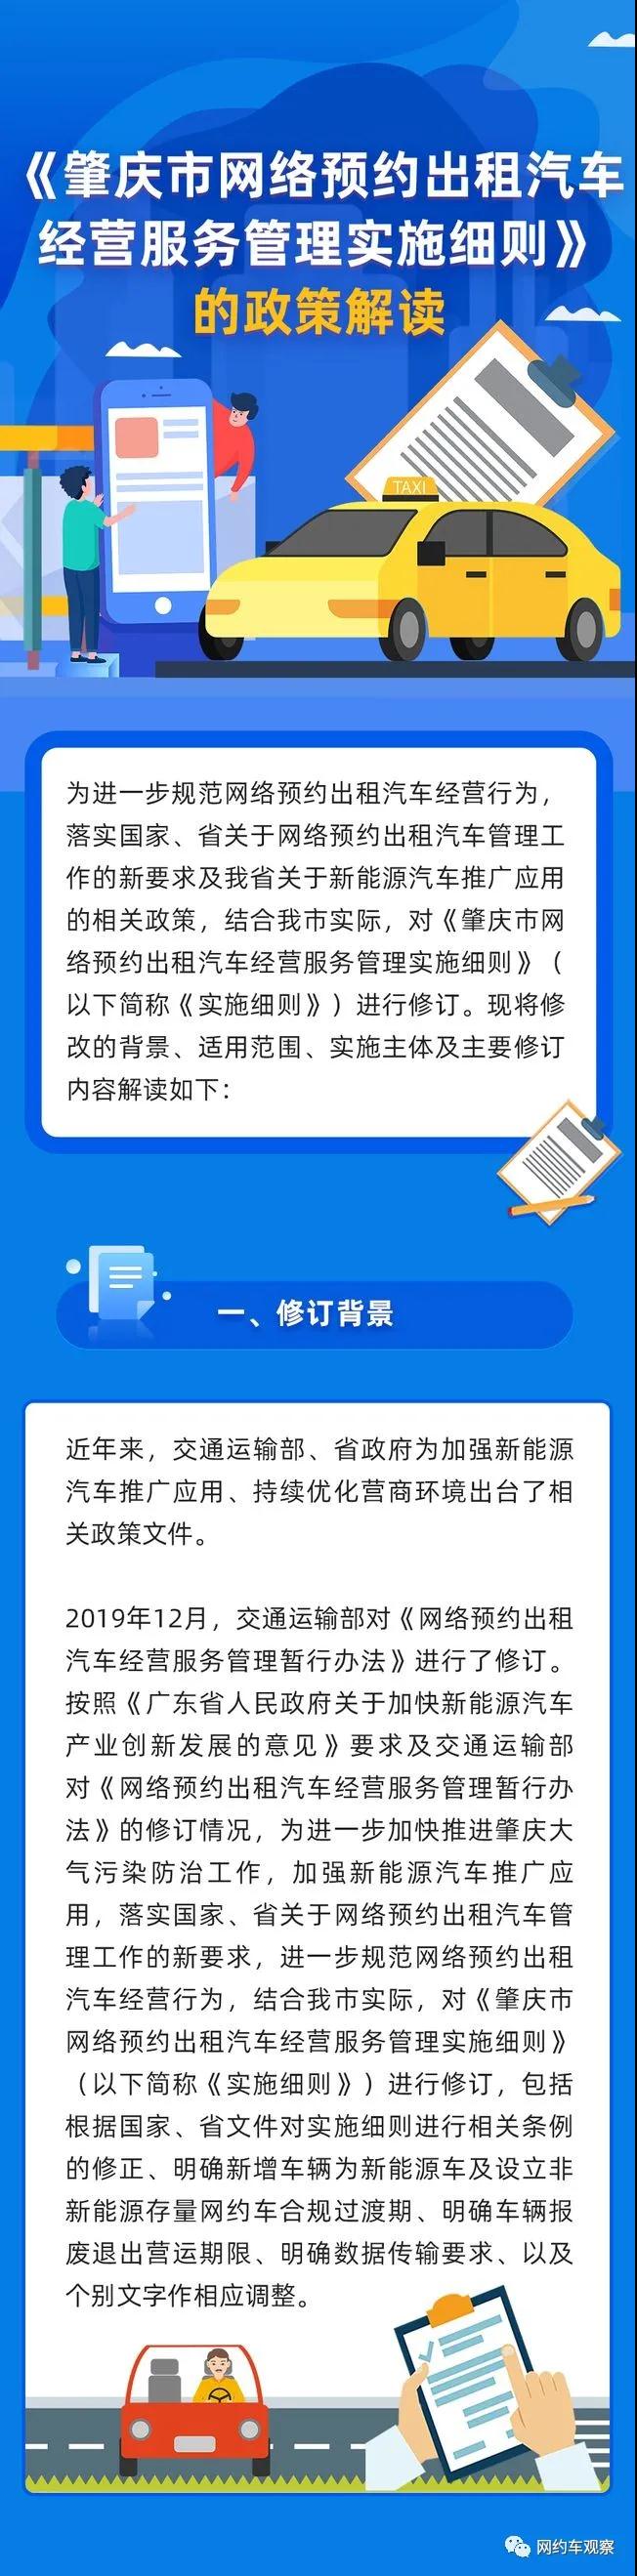 《肇庆市网络预约出租汽车经营服务管理实施细则》的政策解读